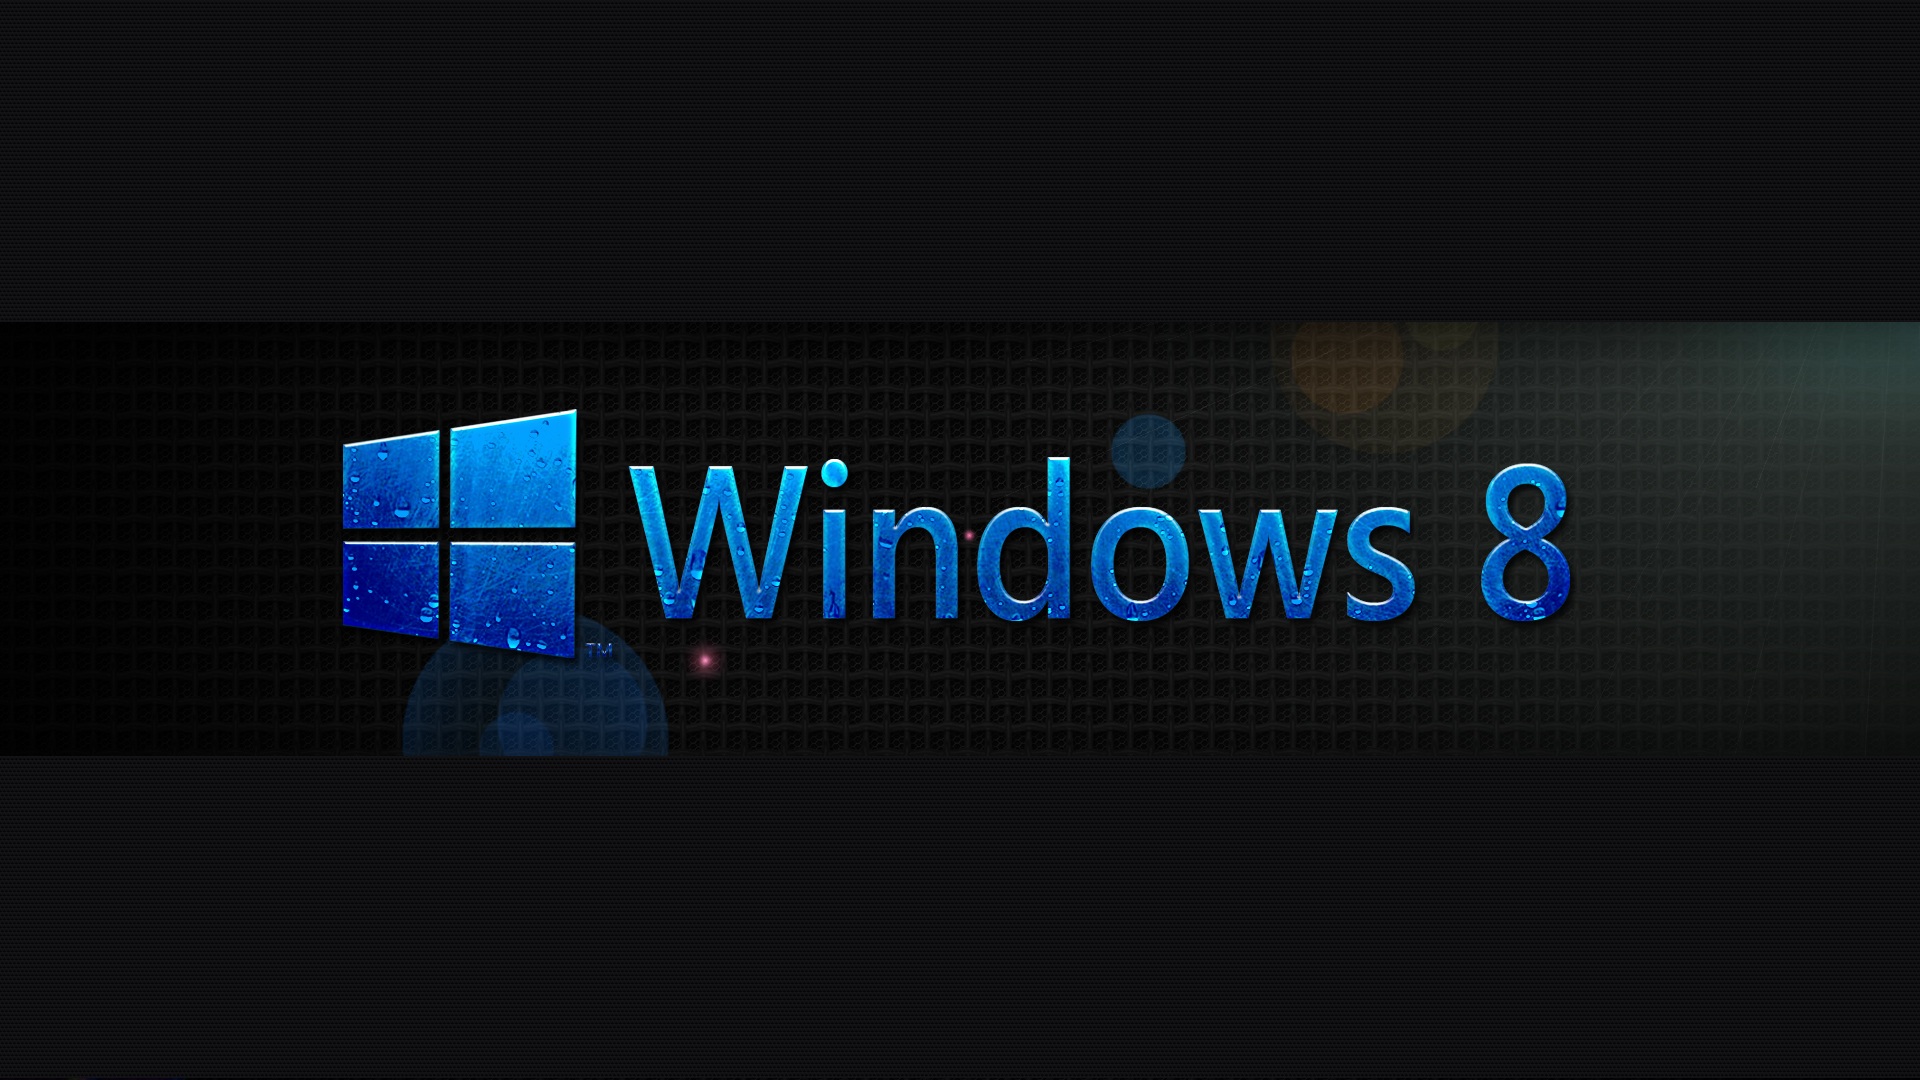 Windows 8 Wallpaper Hd 3d For Desktop